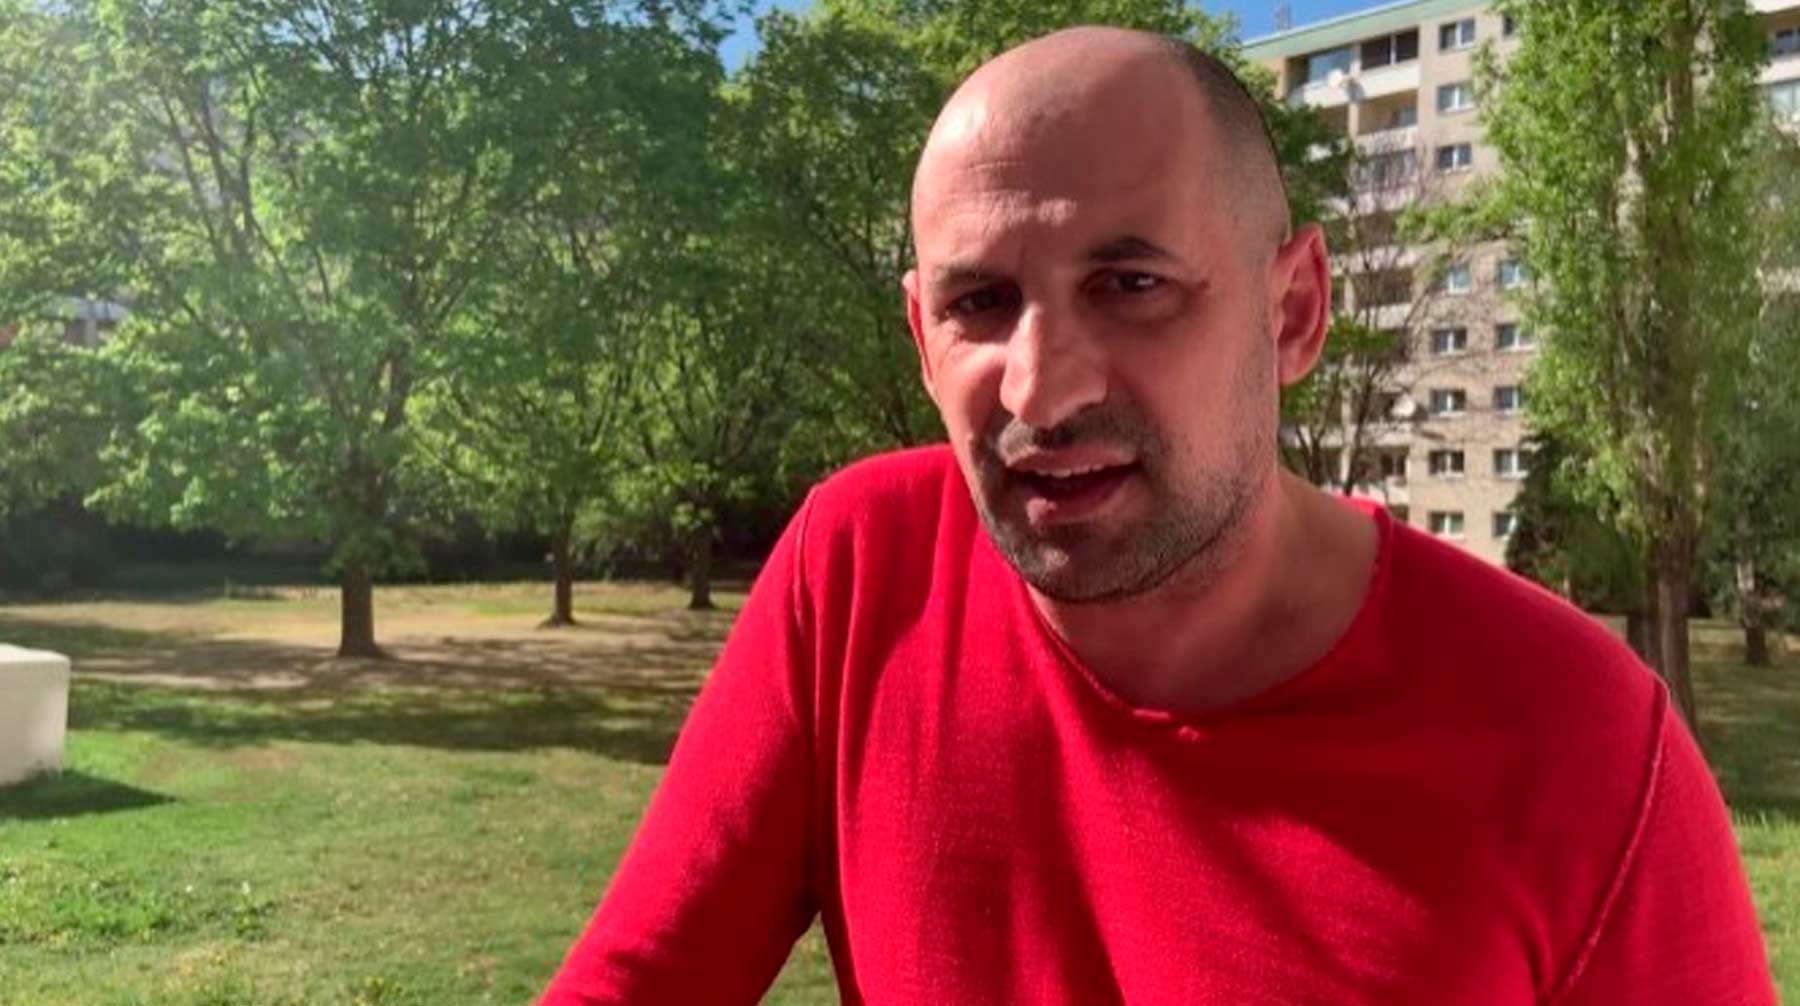 Dailystorm - Нападавший и жертва — выходцы из Чечни: прокуратура Австрии раскрыла детали убийства россиянина